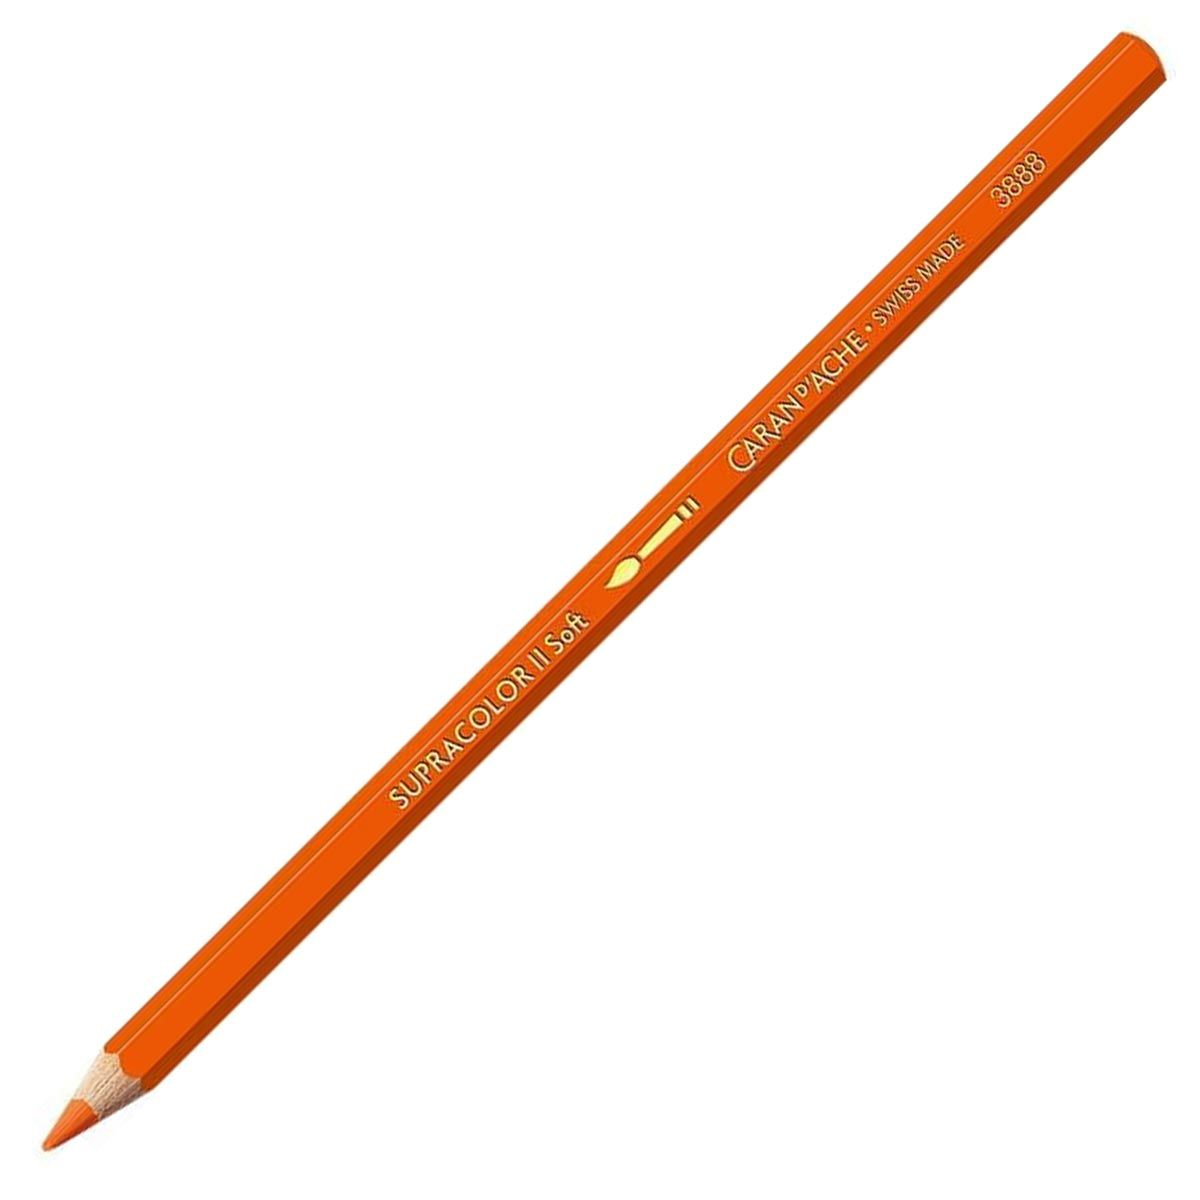 Caran d'Ache Supracolor ll Soft Aquarelle Pencil - Reddish Orange 040